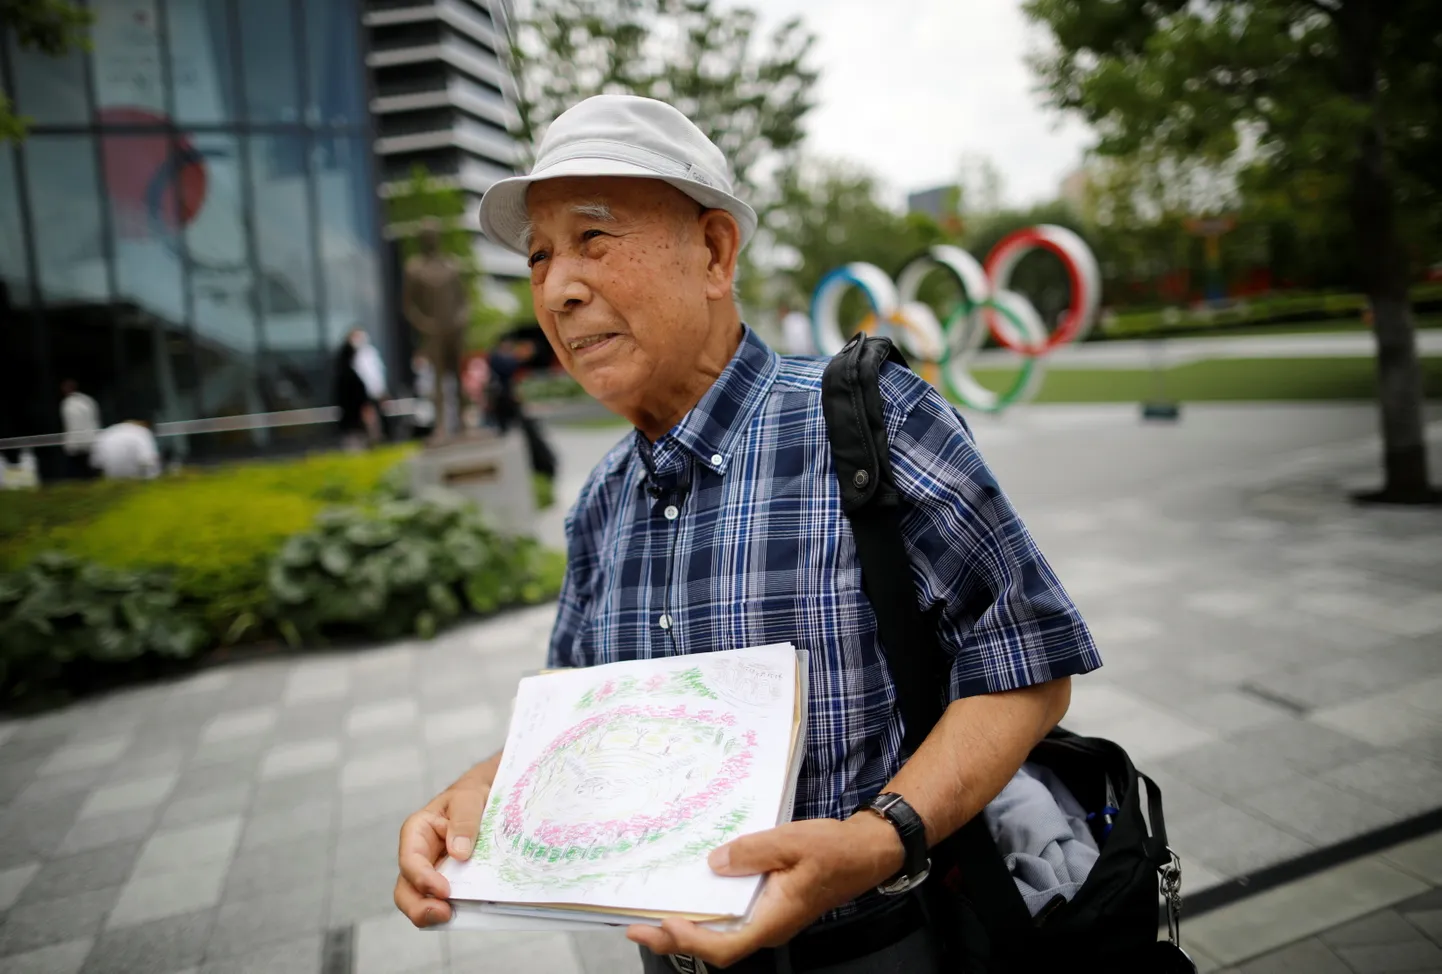 Nüüdseks 87-aastane Kohei Jinno kaotas kõigepealt kodu 1964. aasta Tokyo olümpia eel, kuna see jäi ette rahvusstaadioni rajamisele, ning peatselt algava olümpia tõttu lammutati ka maja, kus ta oli viimased pool sajandit elanud. Pildil Jinno rahvusstaadioni lähistel olümpiamuuseumi ees.